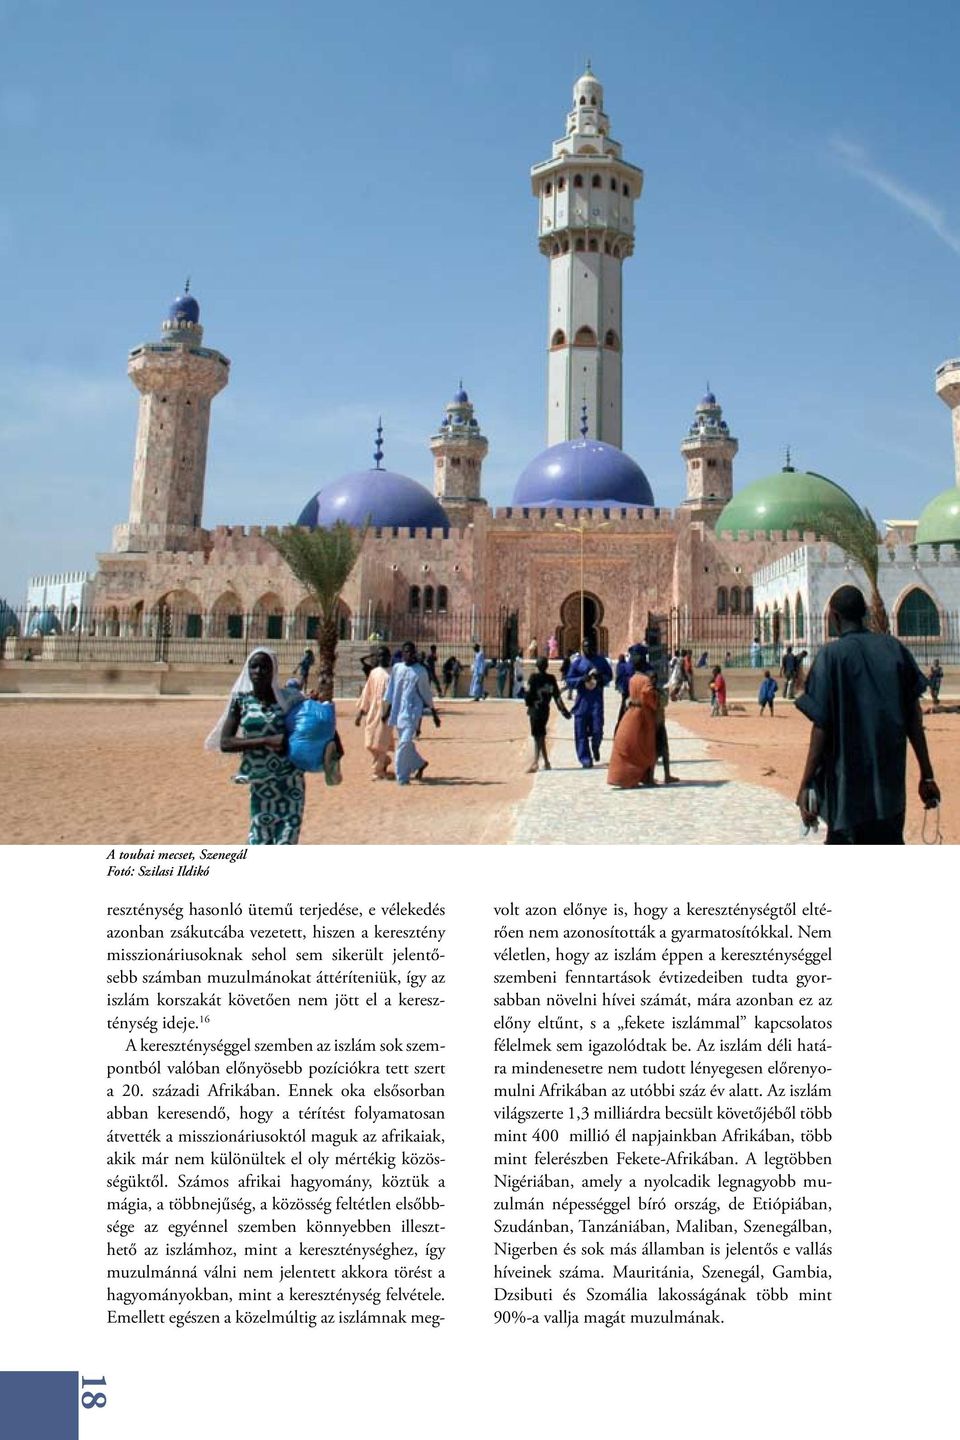 16 A kereszténységgel szemben az iszlám sok szempontból valóban előnyösebb pozíciókra tett szert a 20. századi Afrikában.